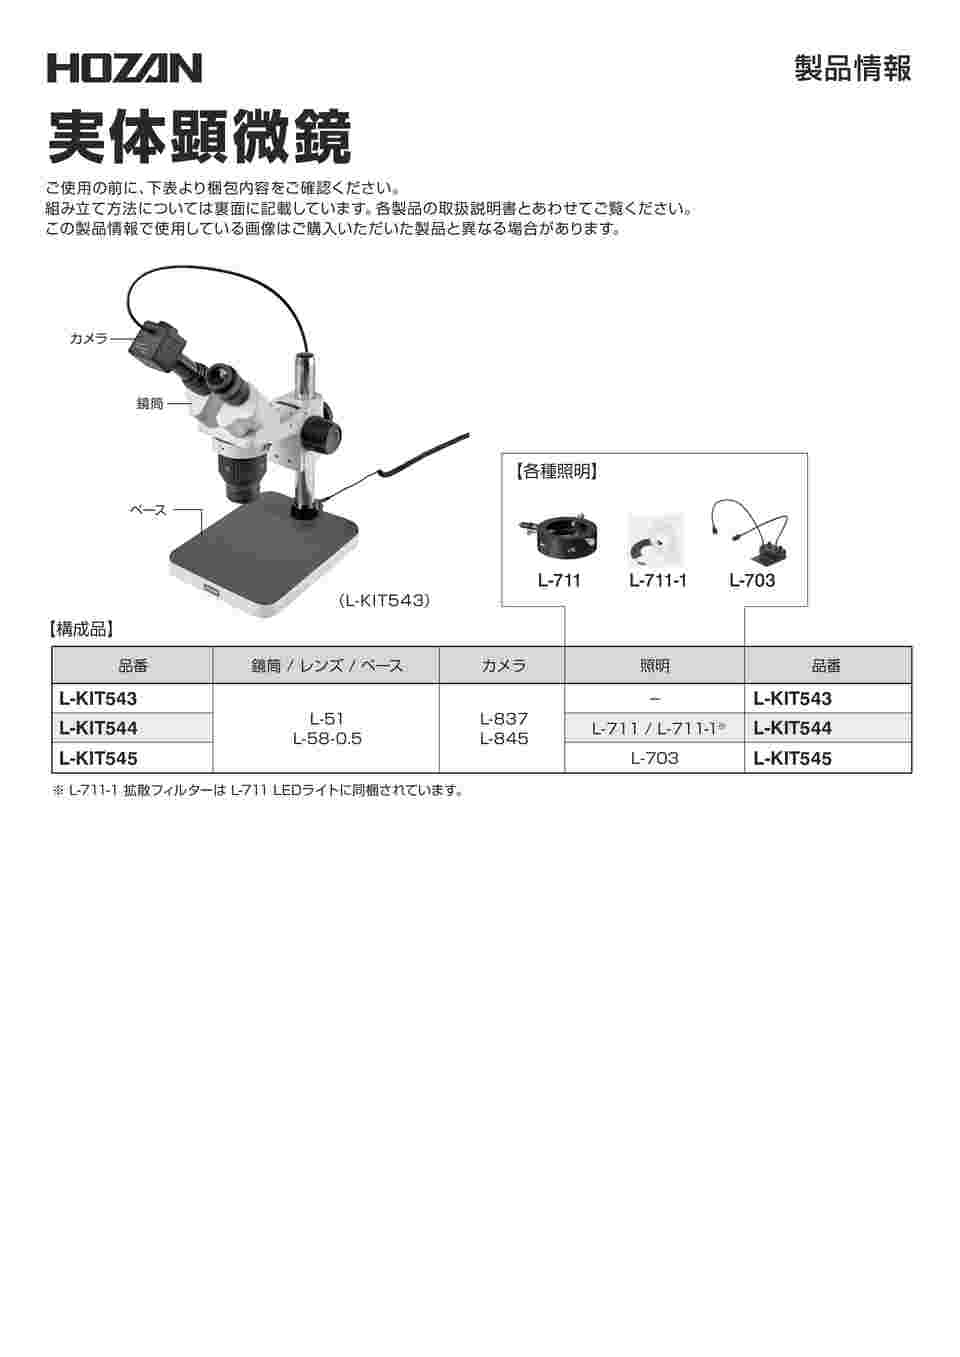 ホーザン 実体顕微鏡 PC用 L-837/L-845/L-51/L-58-0.5/L-716 L-KIT1057